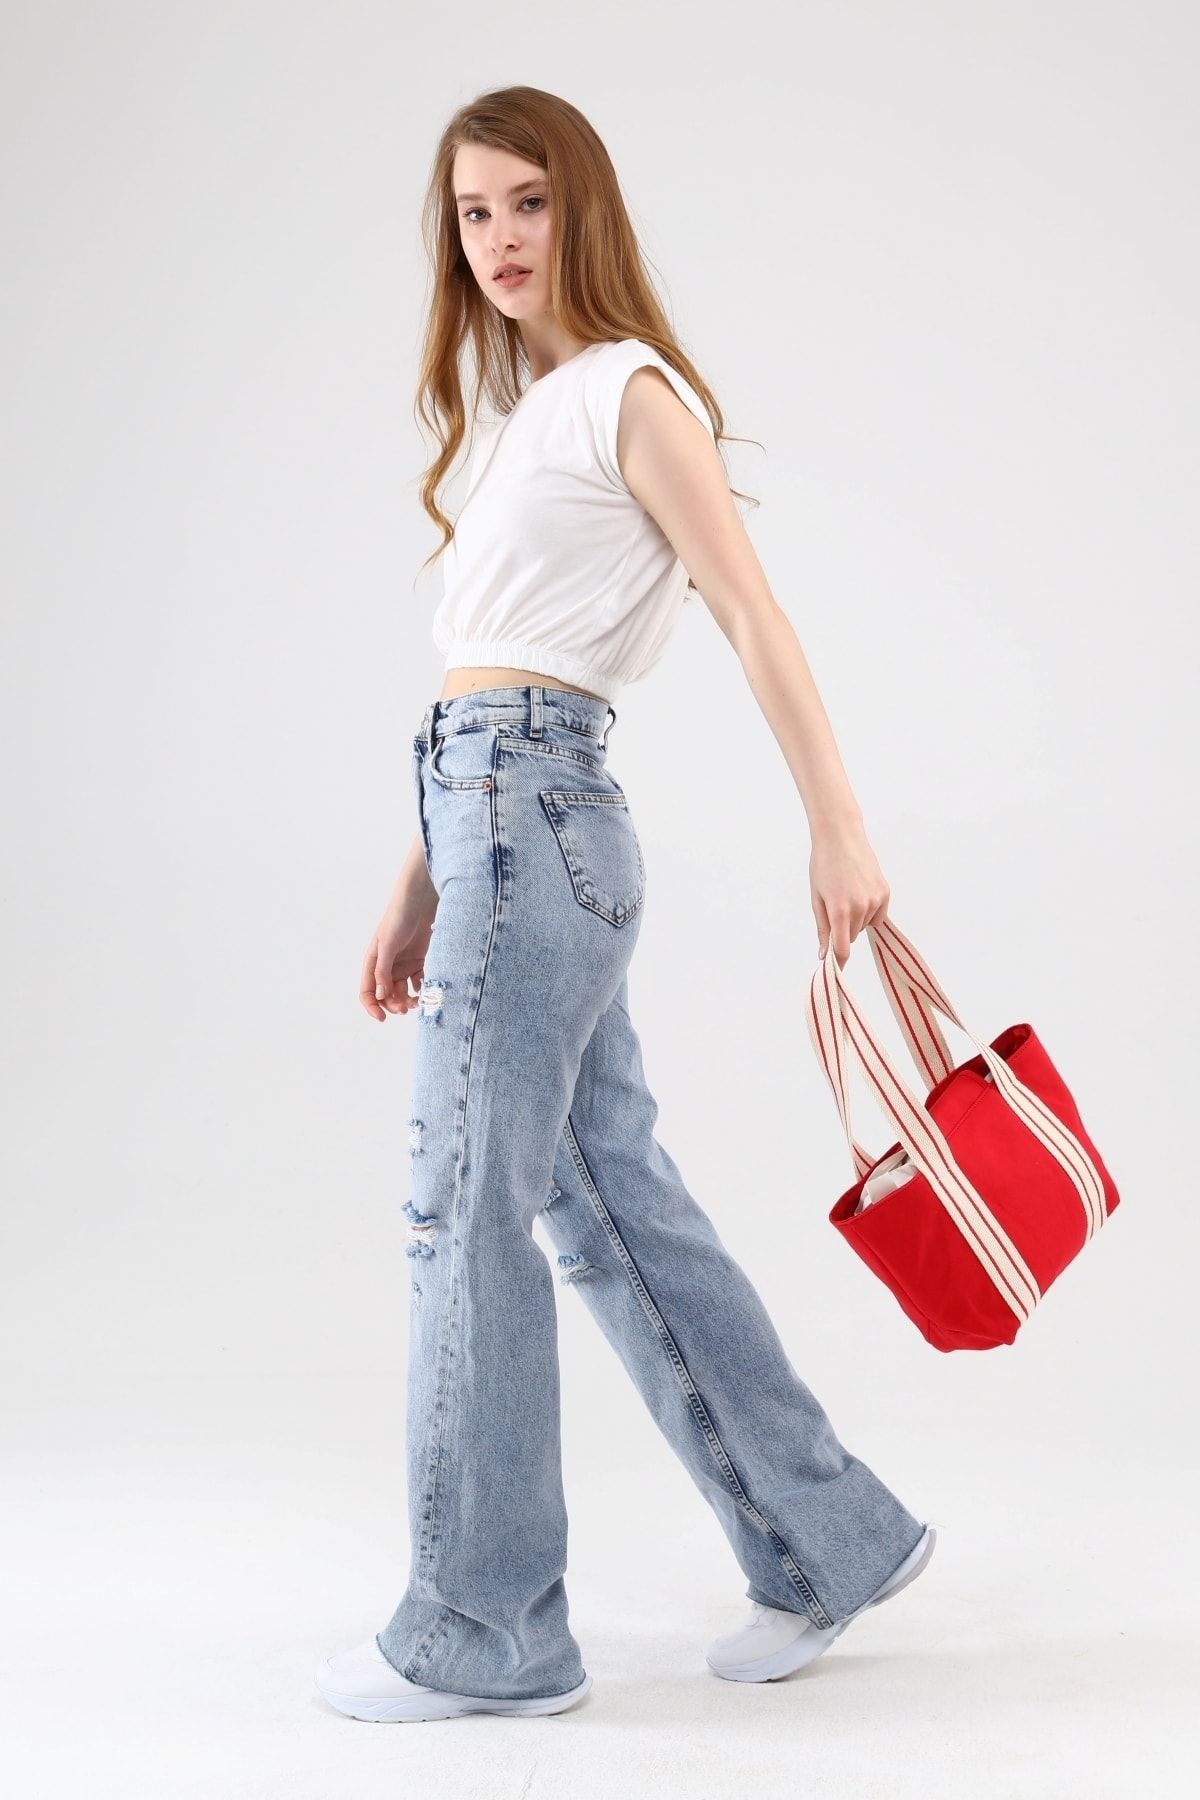 ICONE BAG Kırmızı Renk Kadın Çantası, Kadın Dokuma Kanvas El Ve Omuz Çantası, Çanta Modelleri